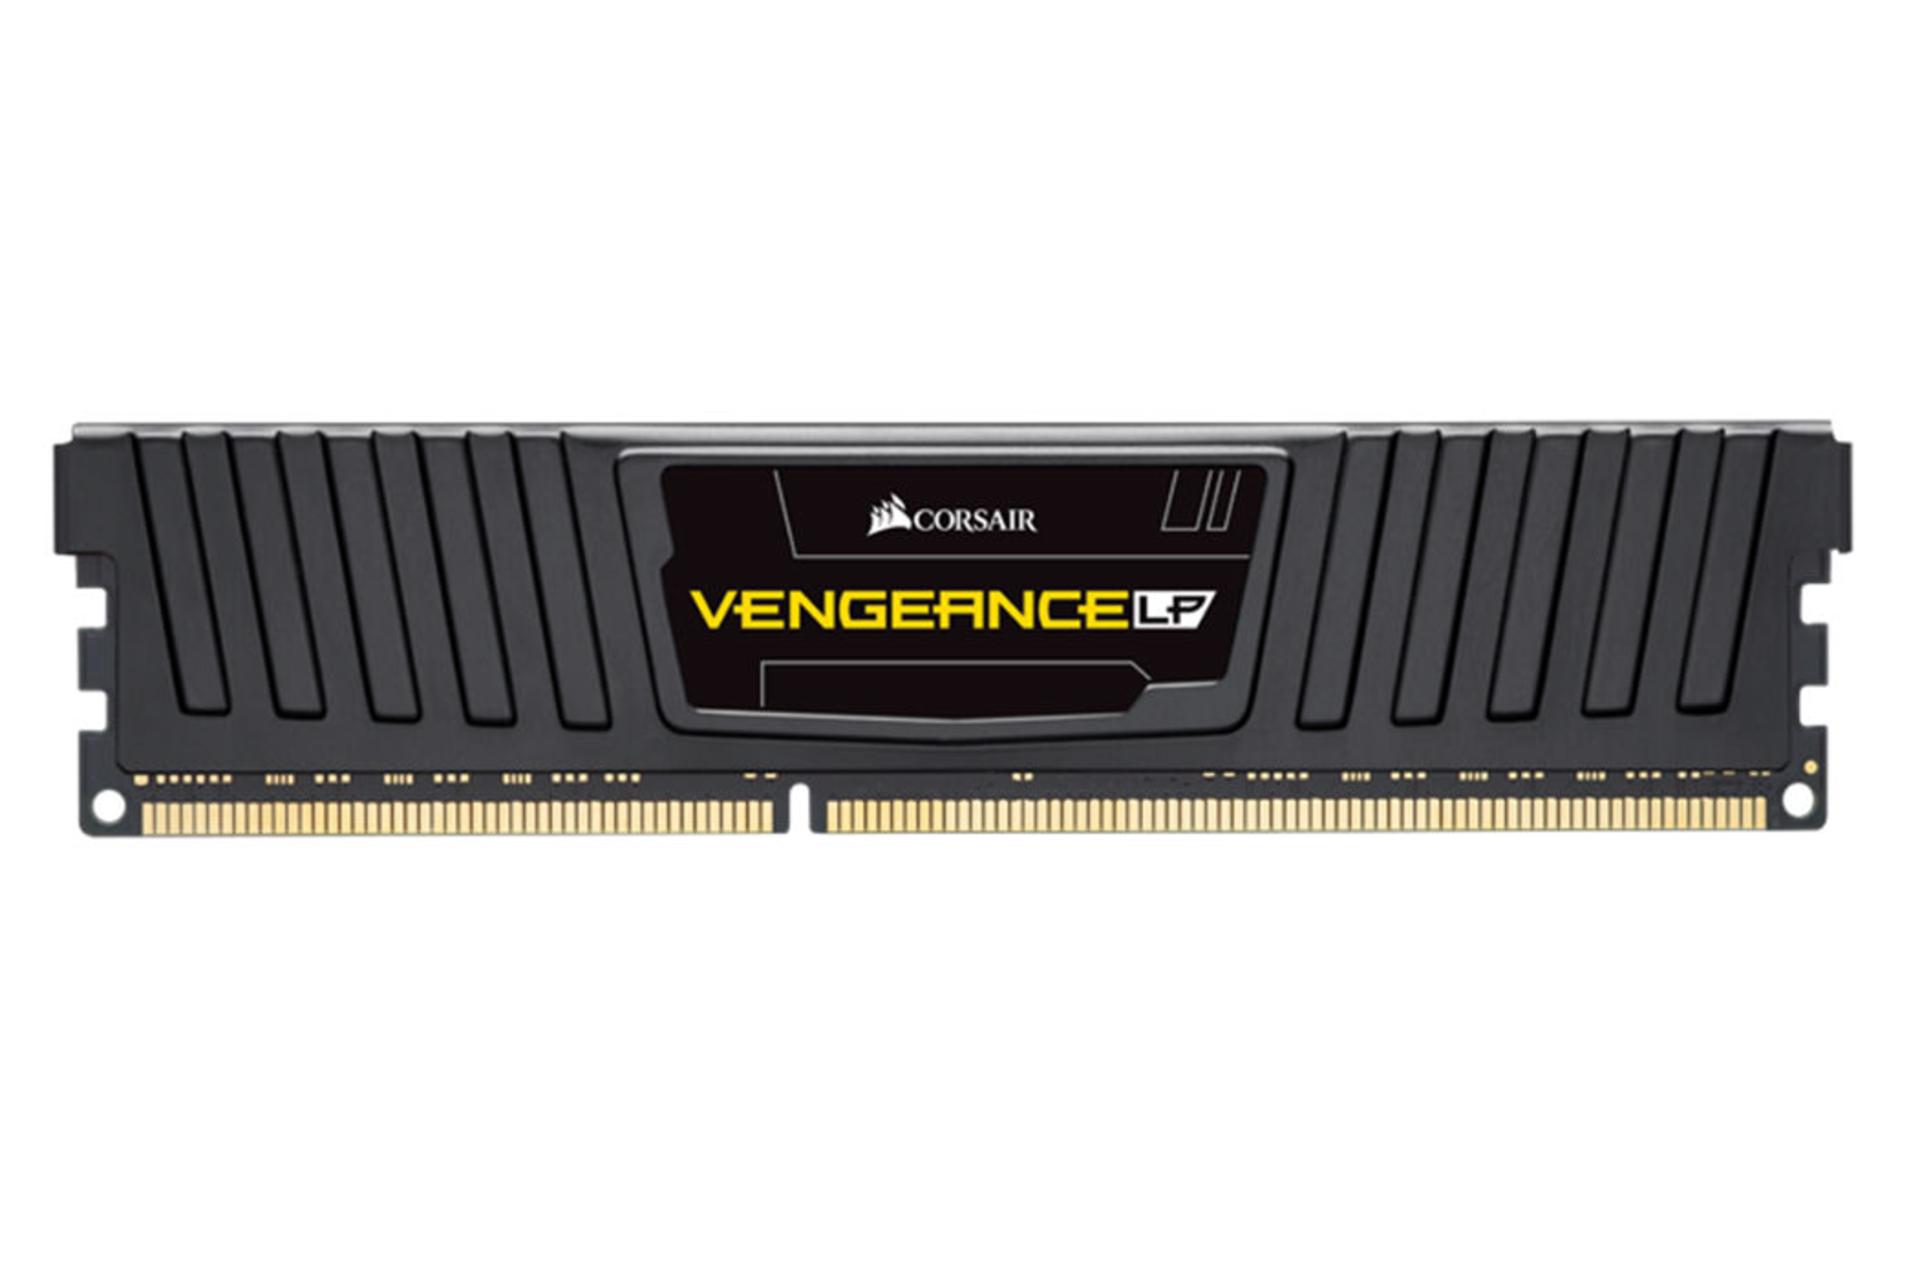 حافظه رم کورسیر VENGEANCE LP ظرفیت 4 گیگابایت از نوع DDR3-1600